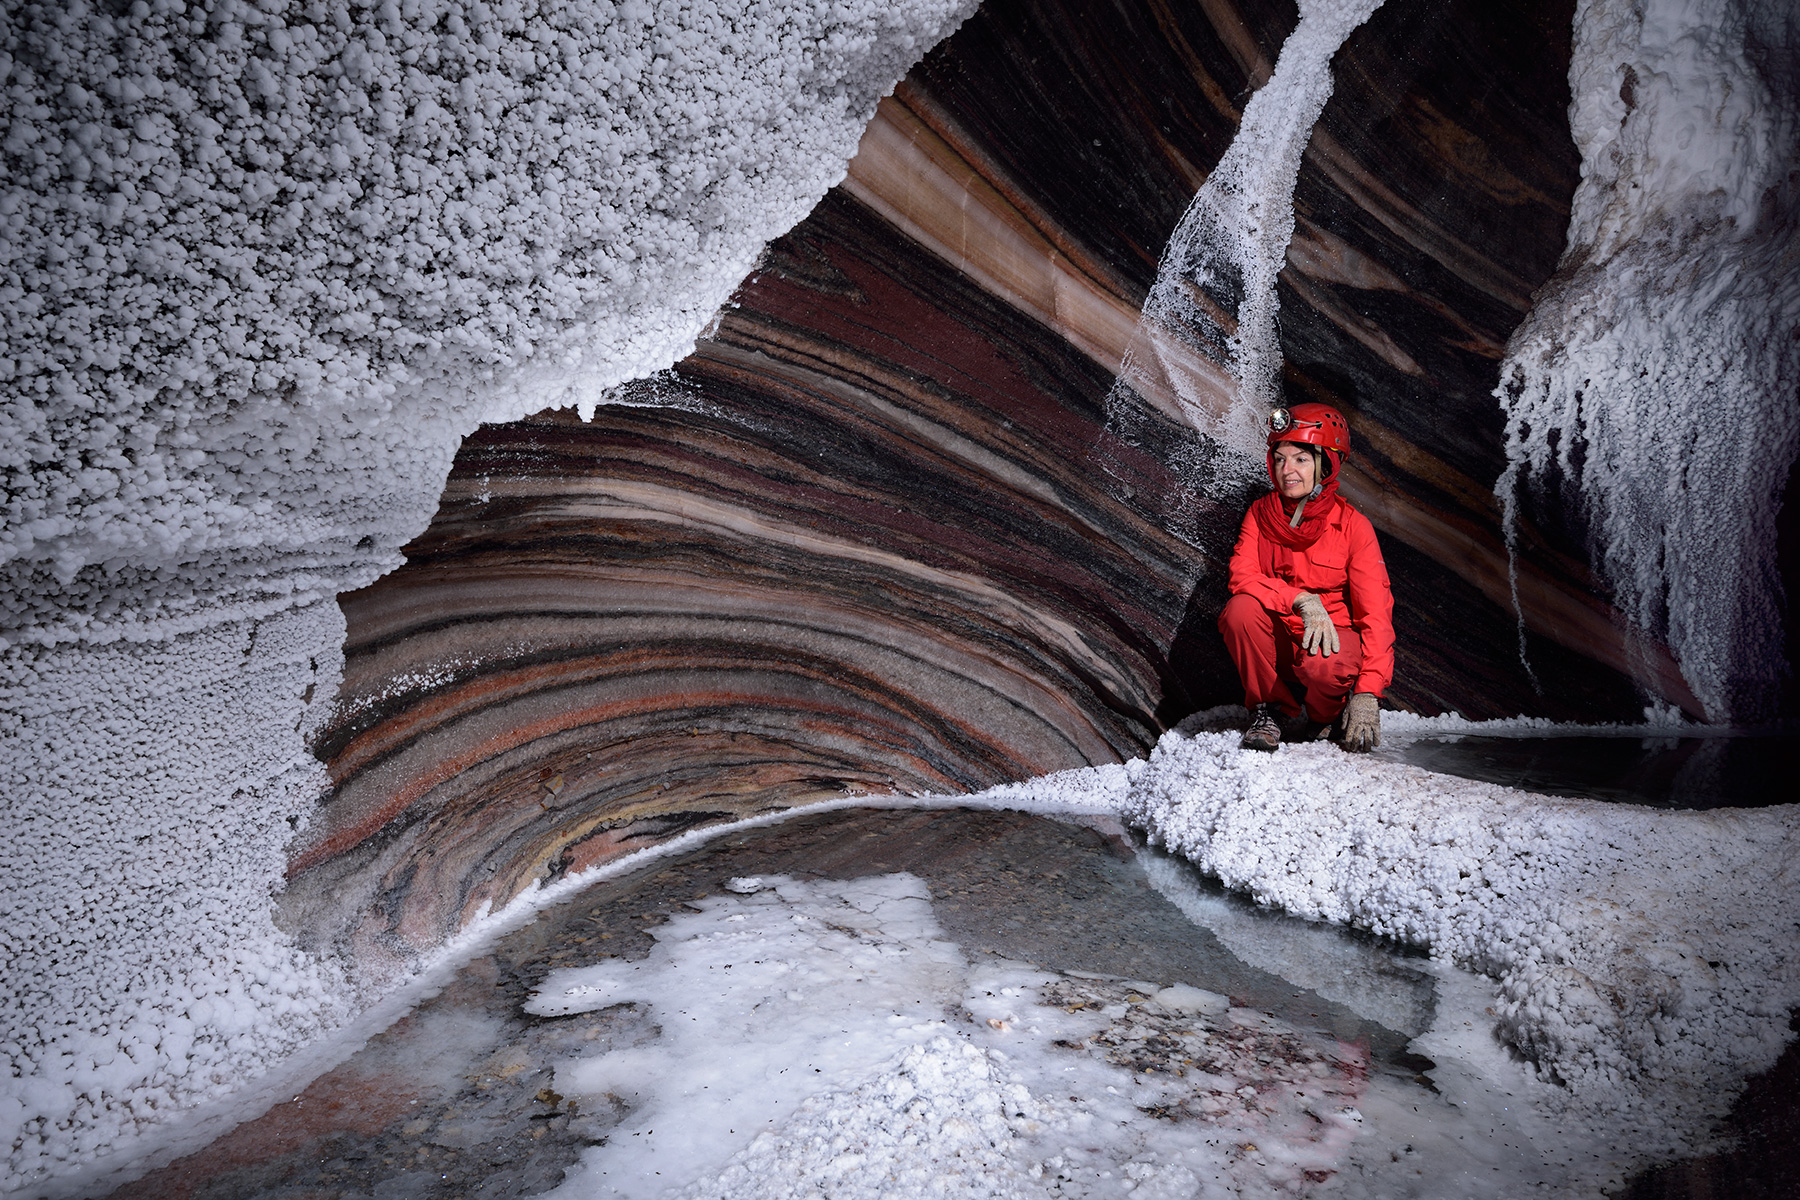 Stair Cave (Iran, dôme de sel de Dashti) : spéléo dans galerie avec couches de sel roses et rouges et dépôts de cristallisations blanches